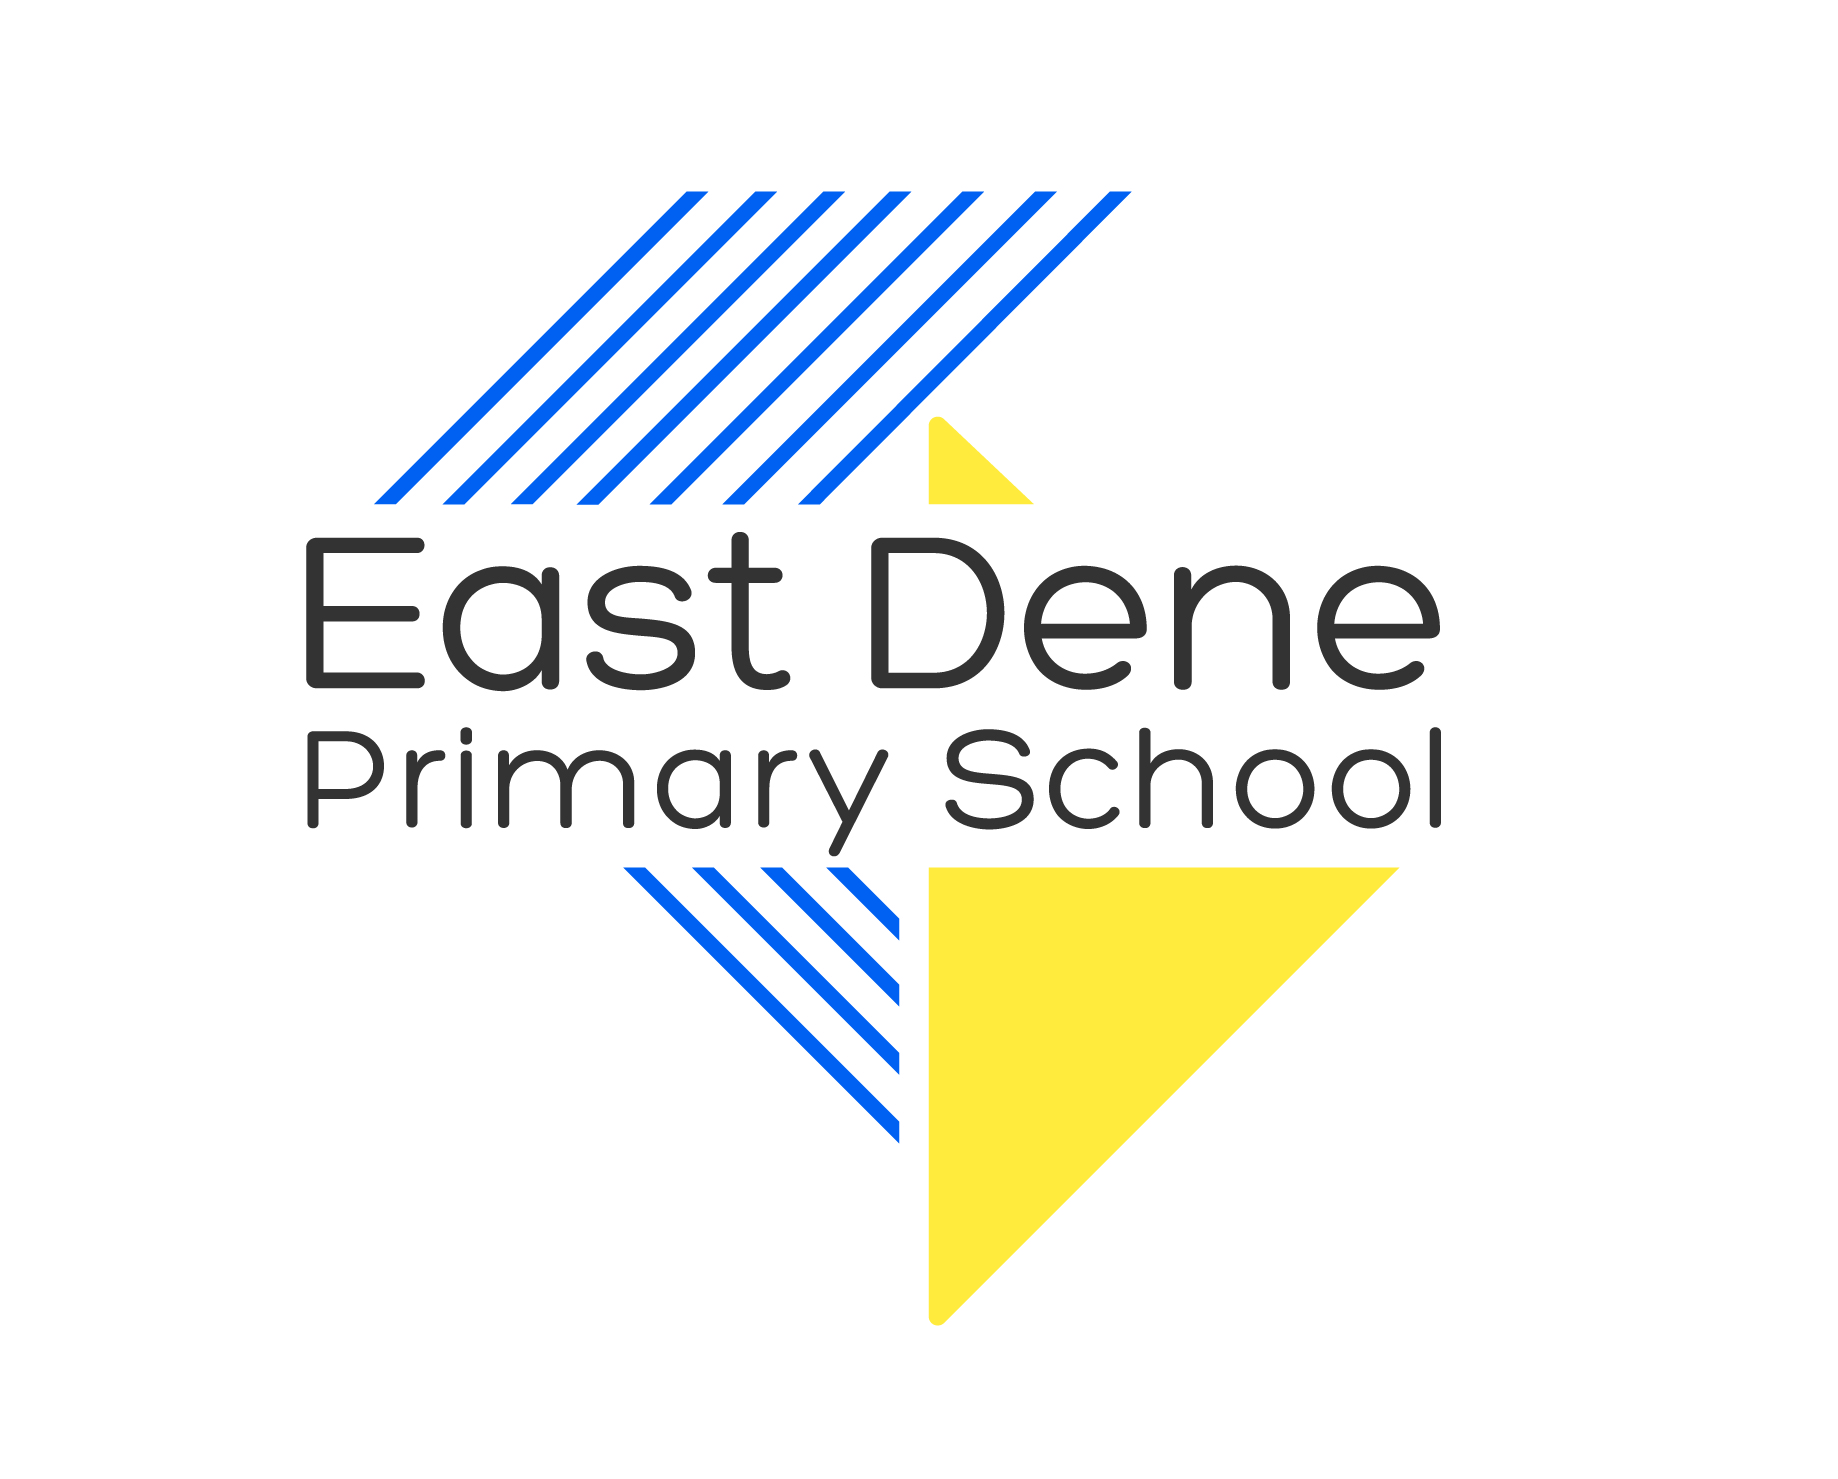 East Dene Primary School